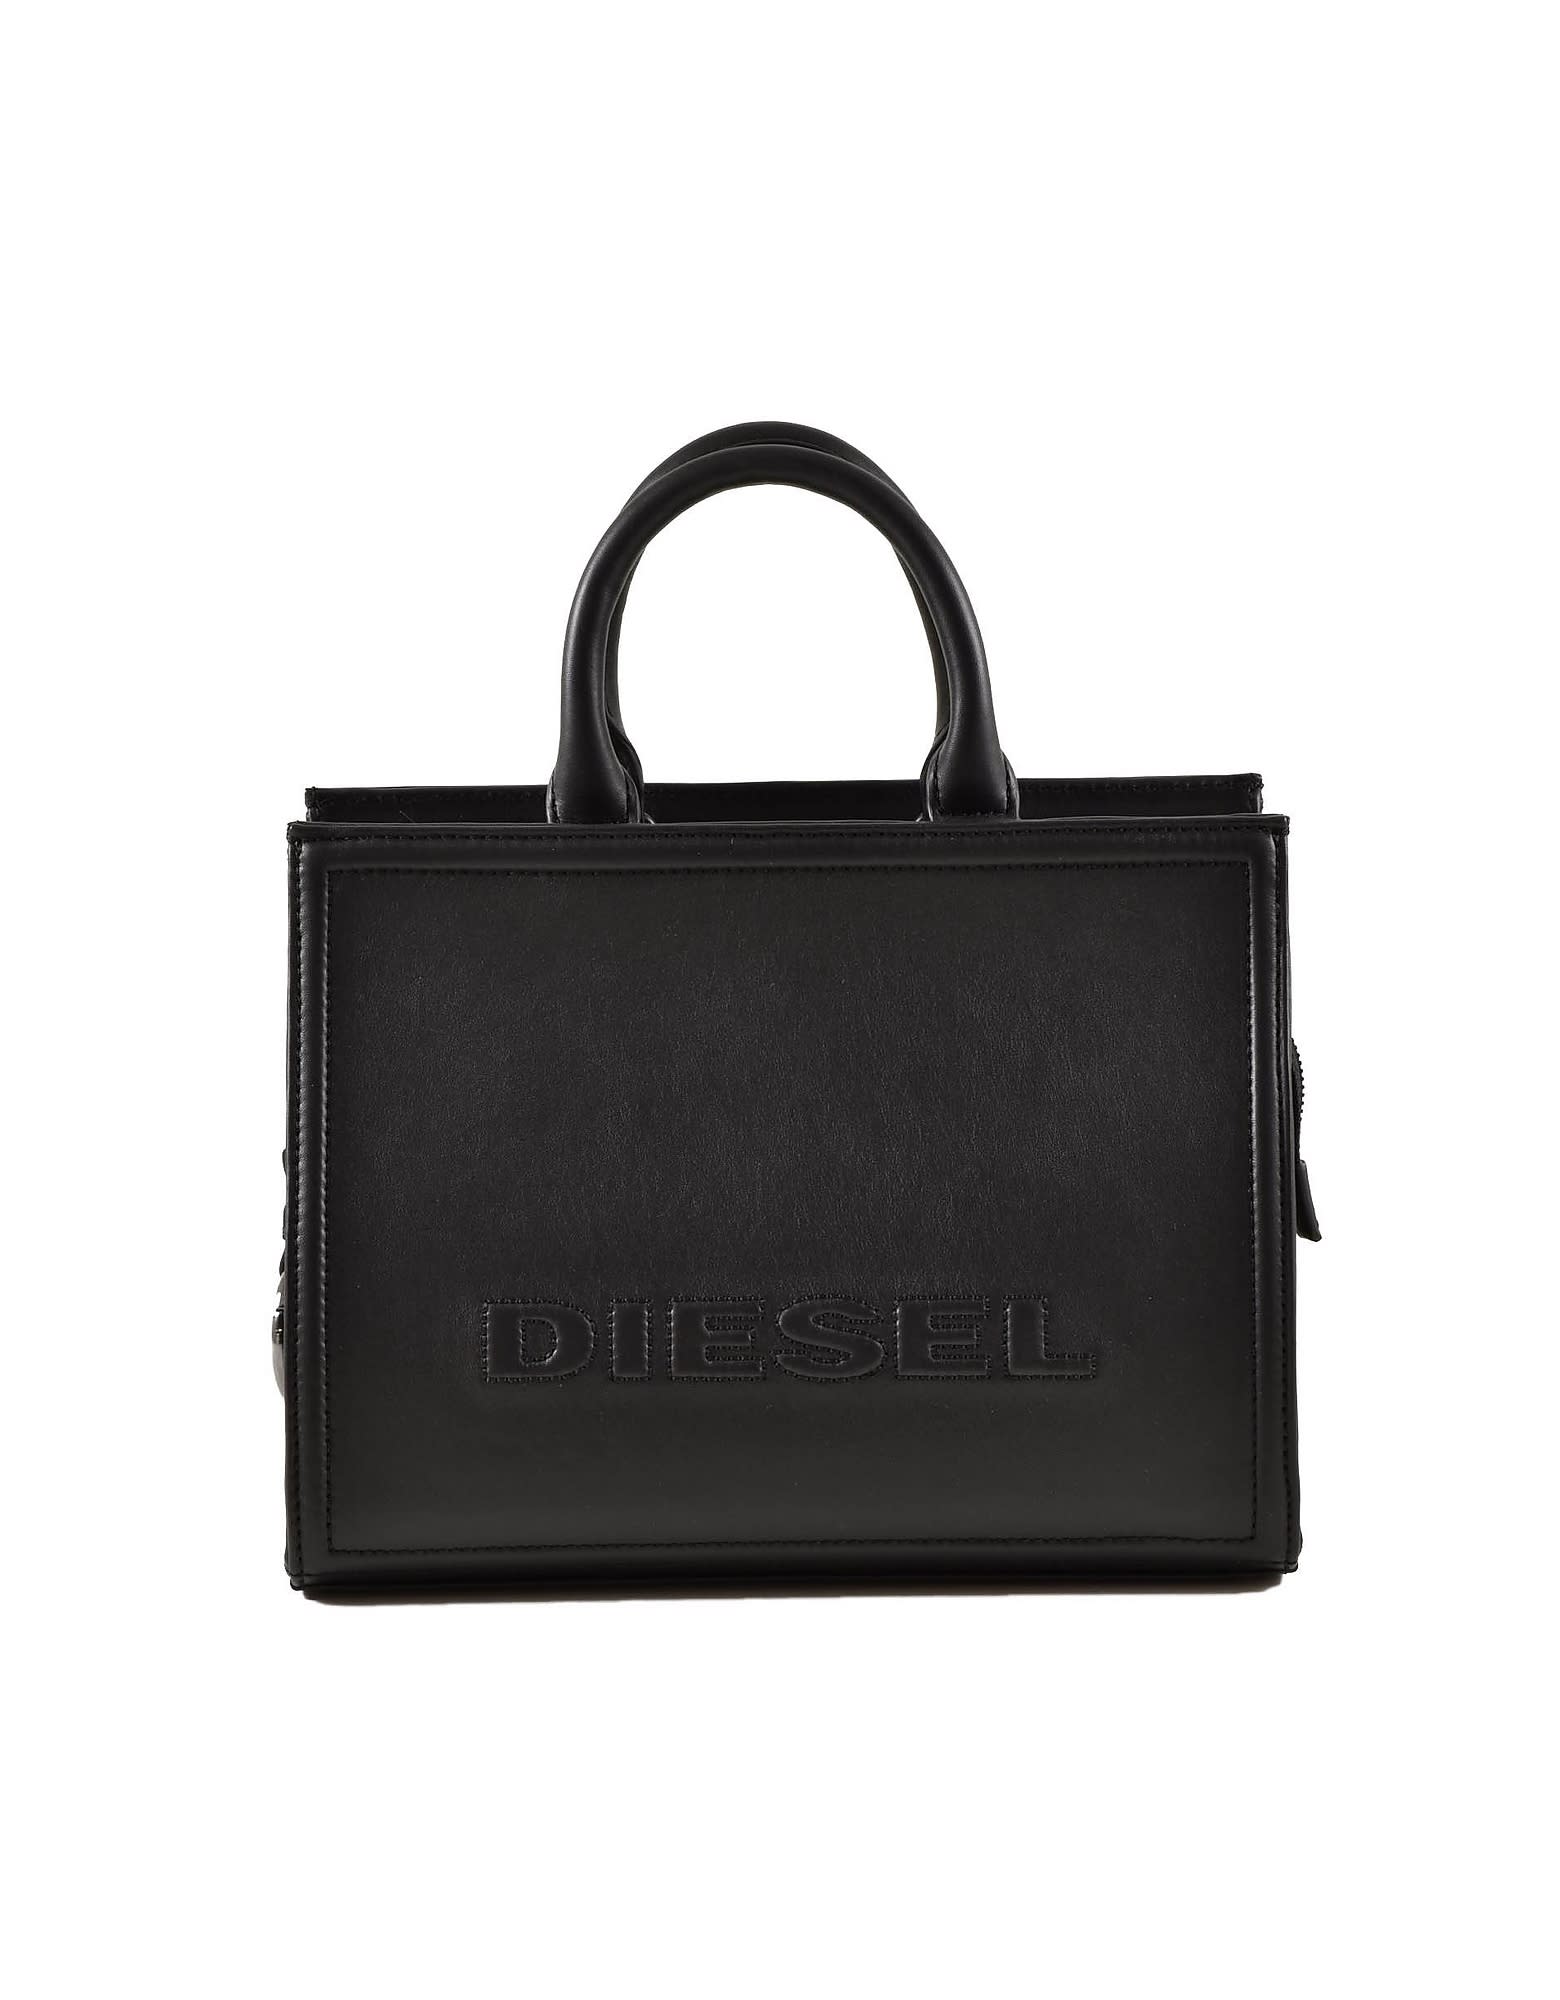 Diesel Womens Black Handbag